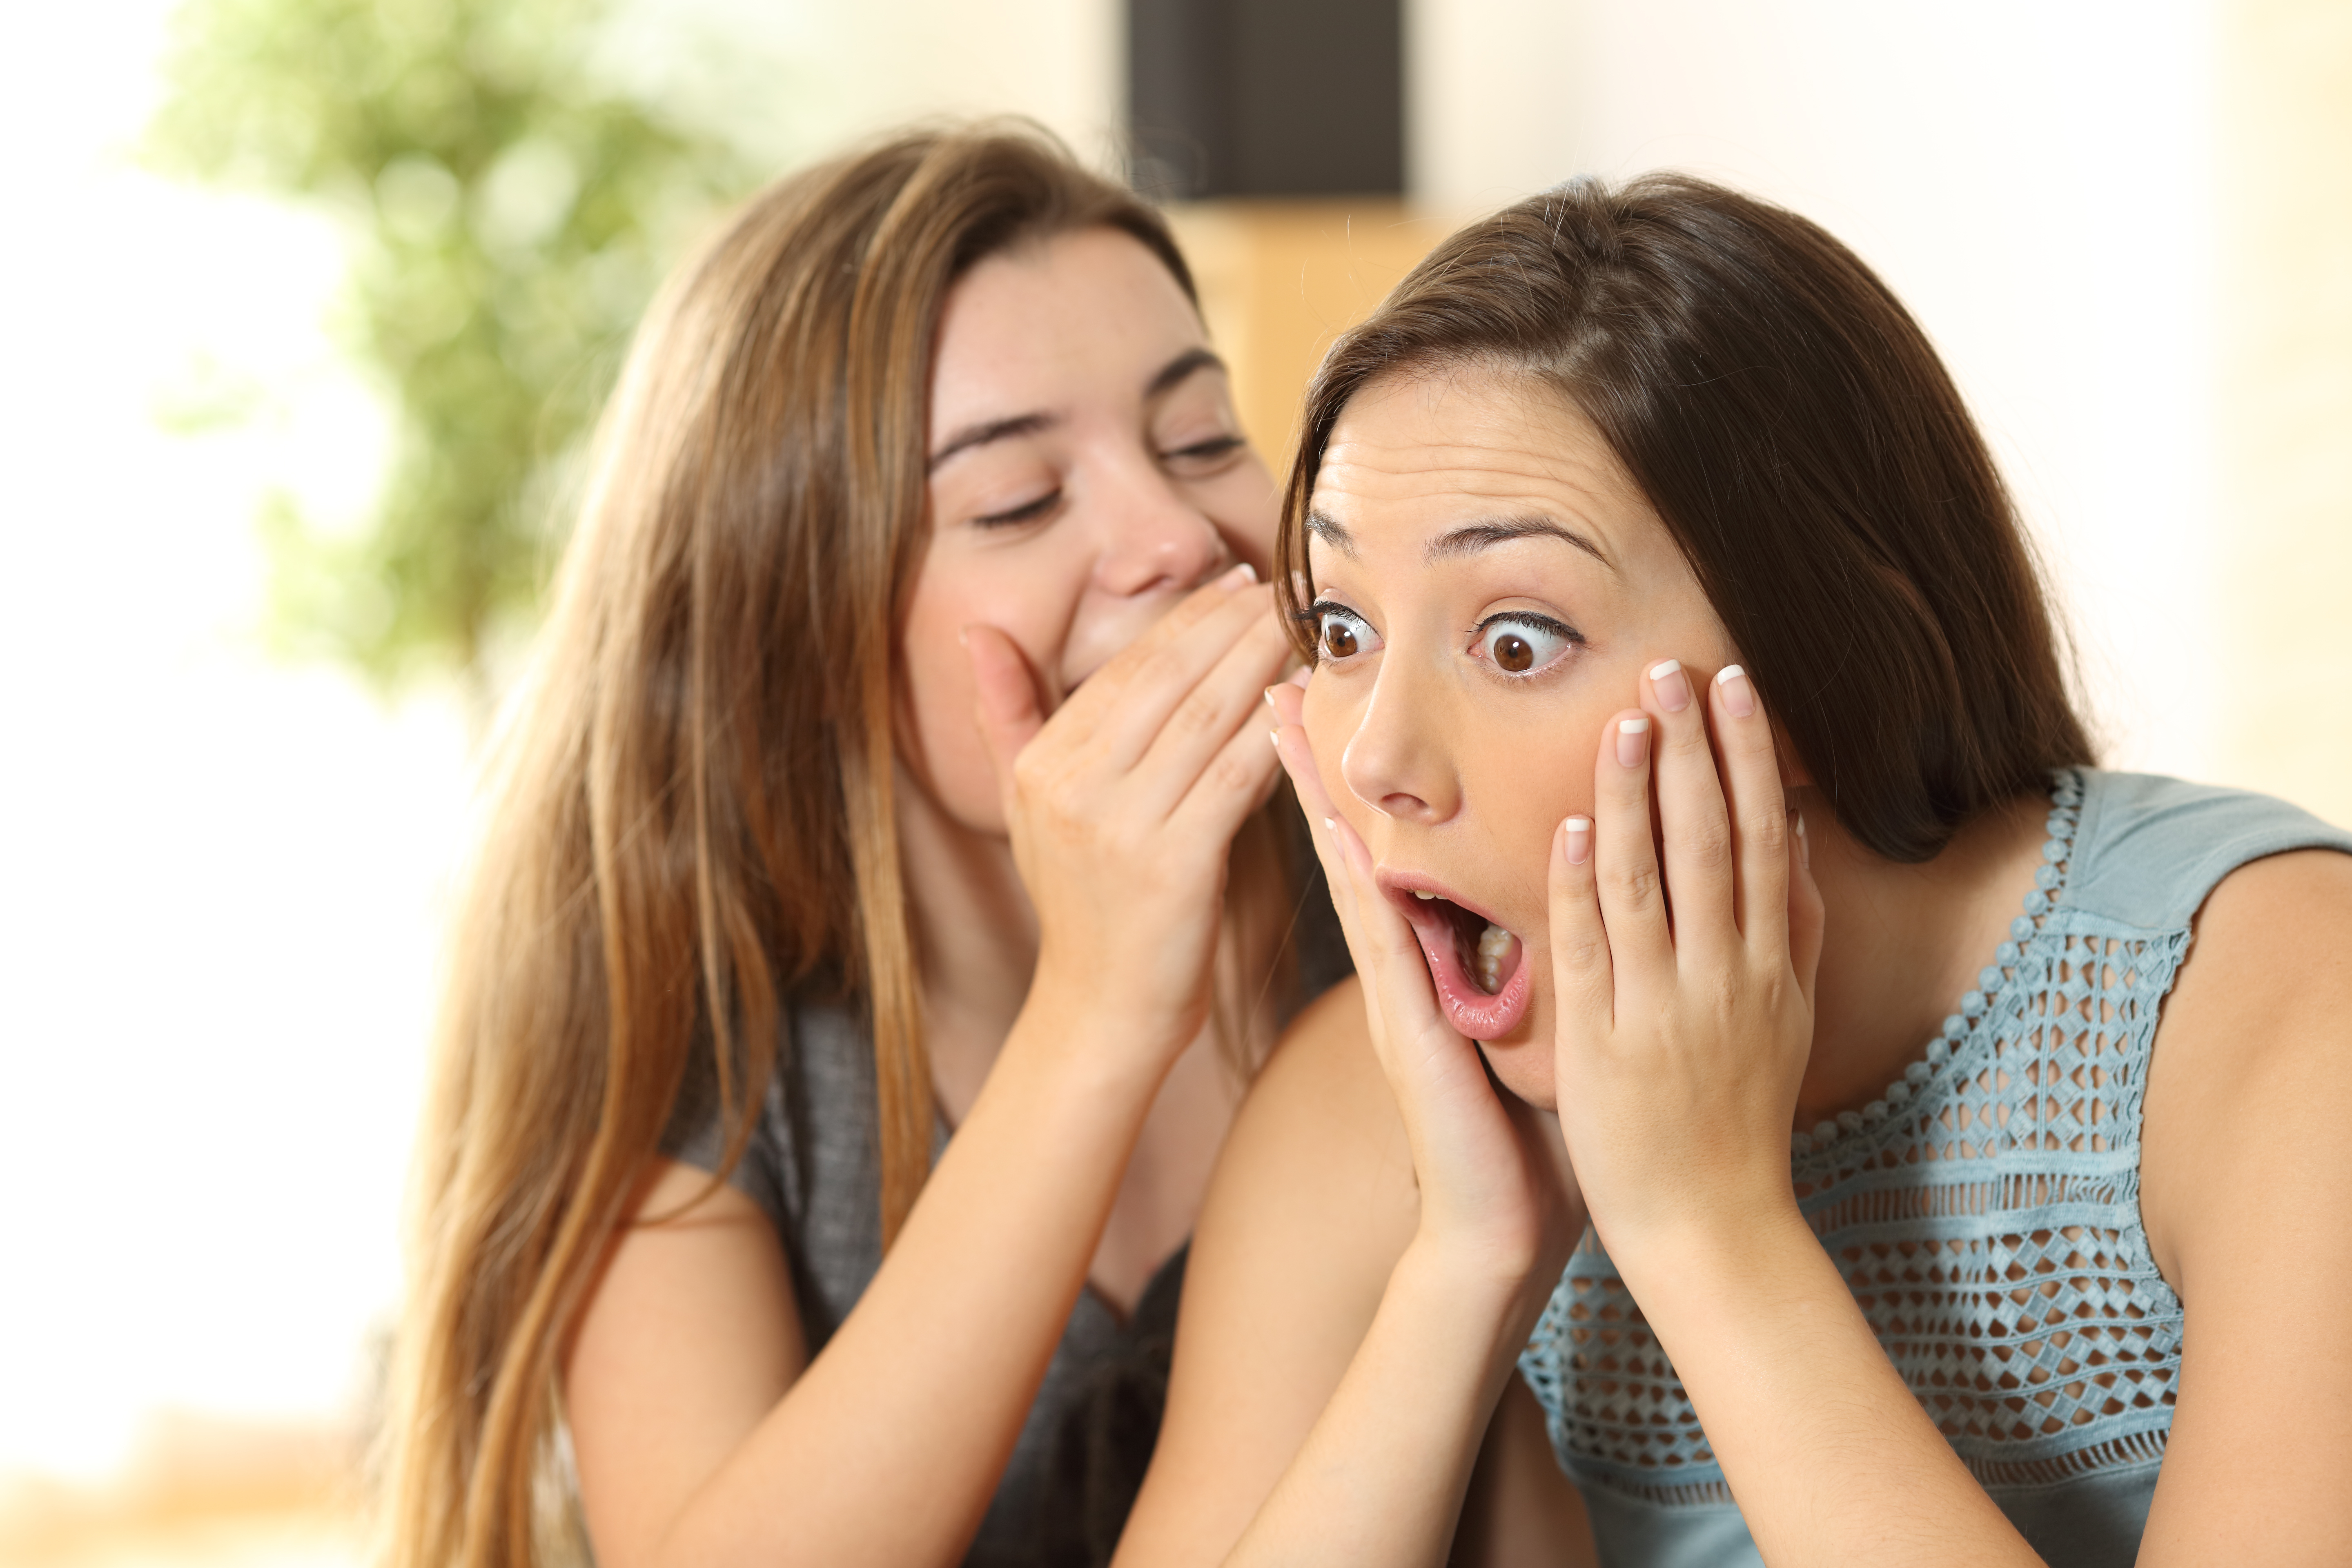 Two women telling each other secrets | Source: Shutterstock